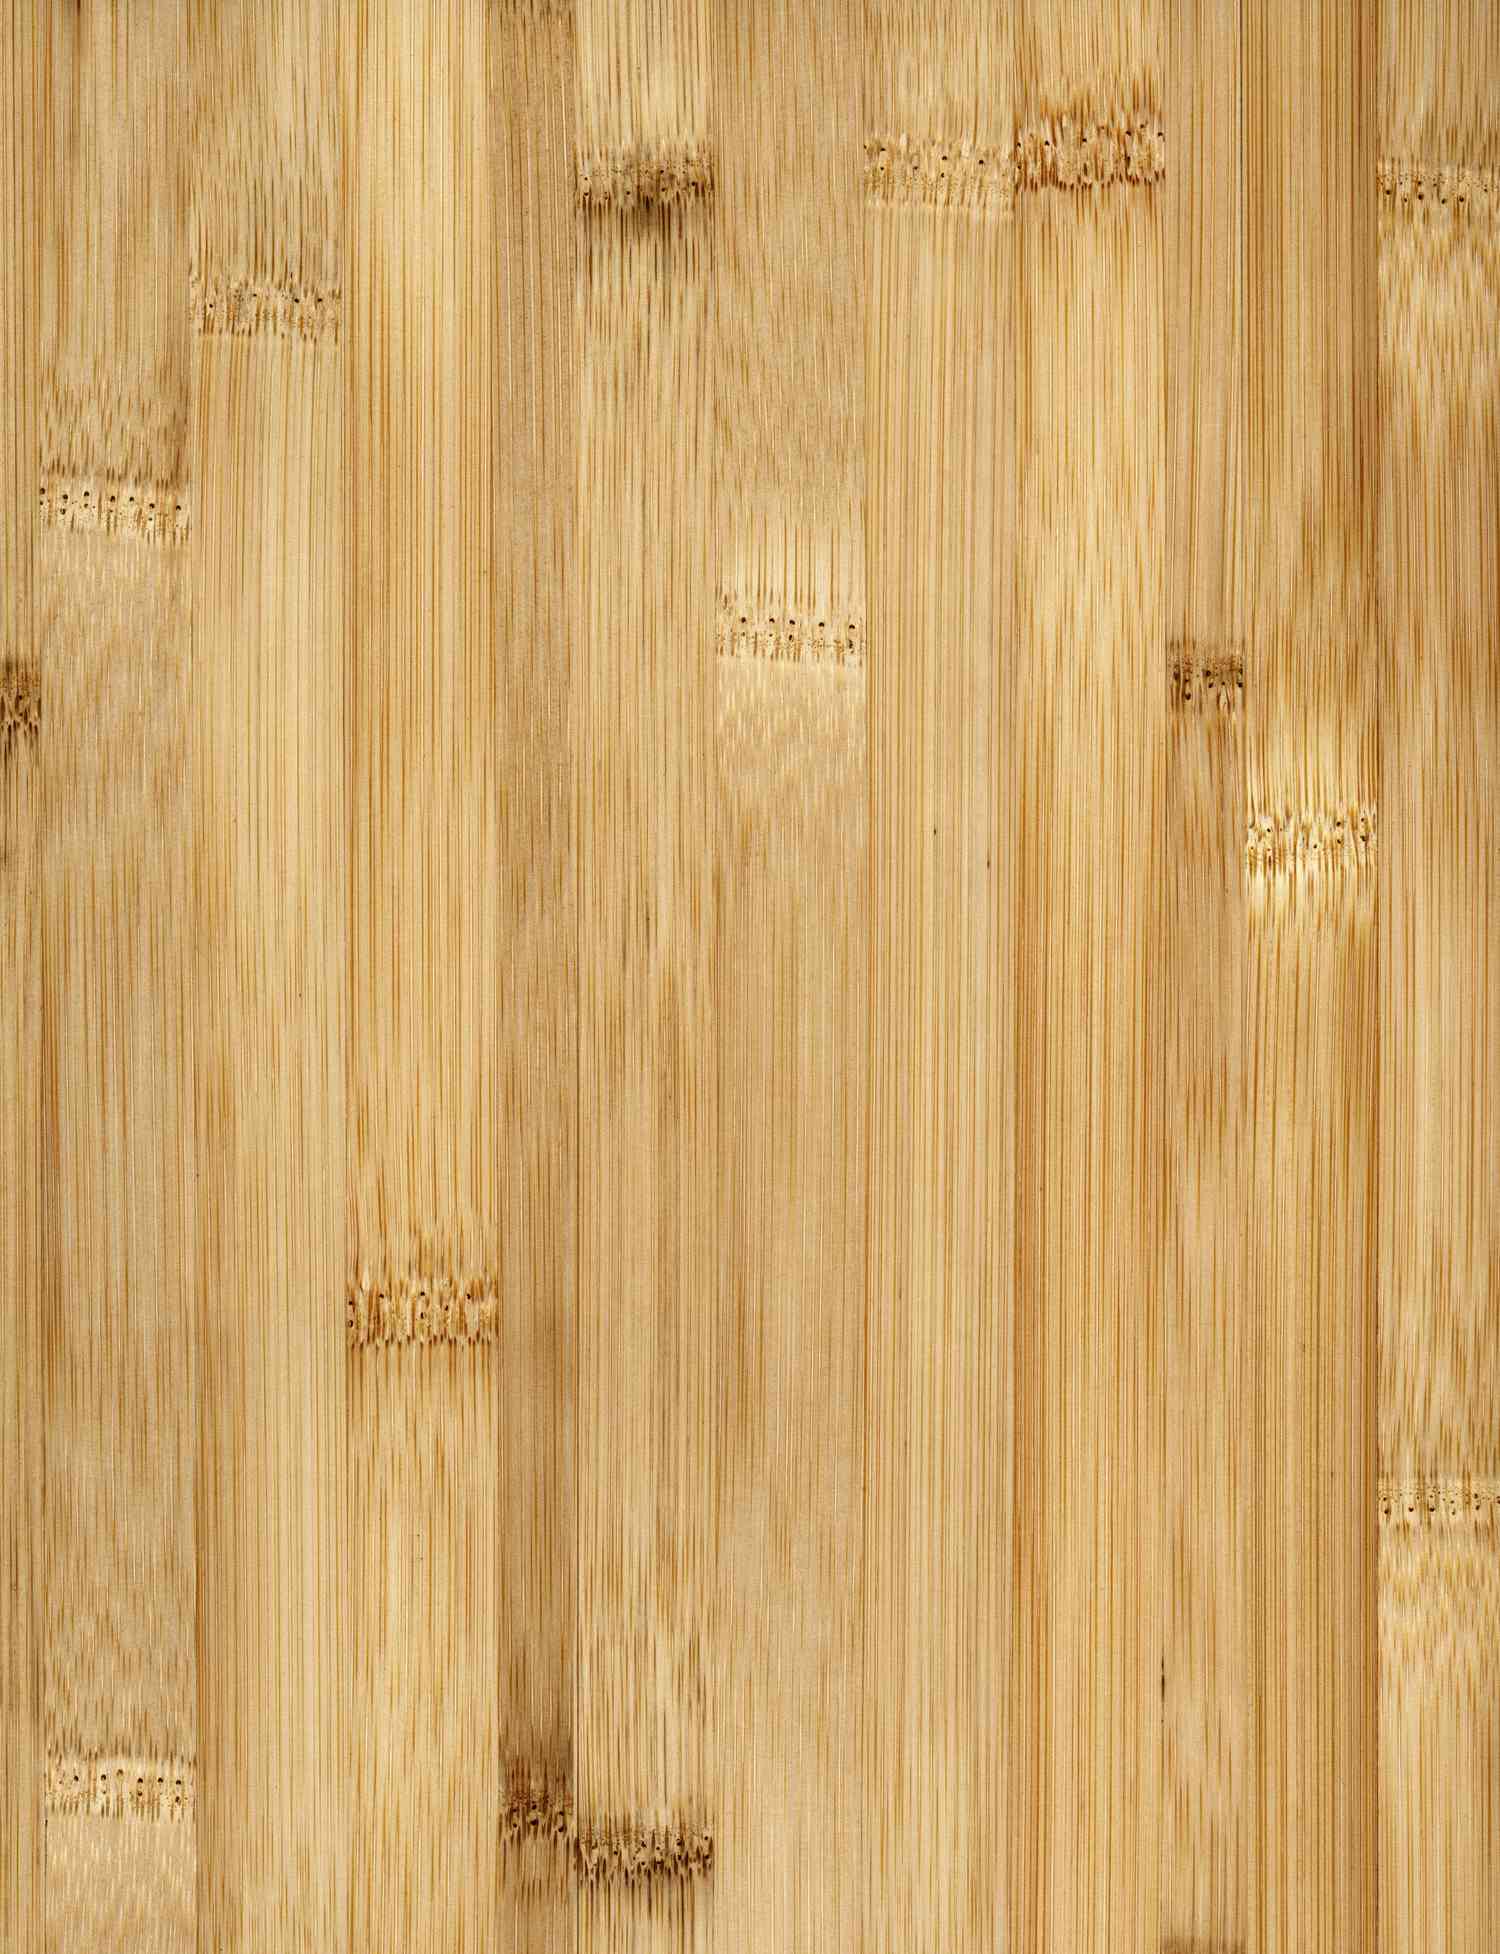 Bamboo floor, full frame